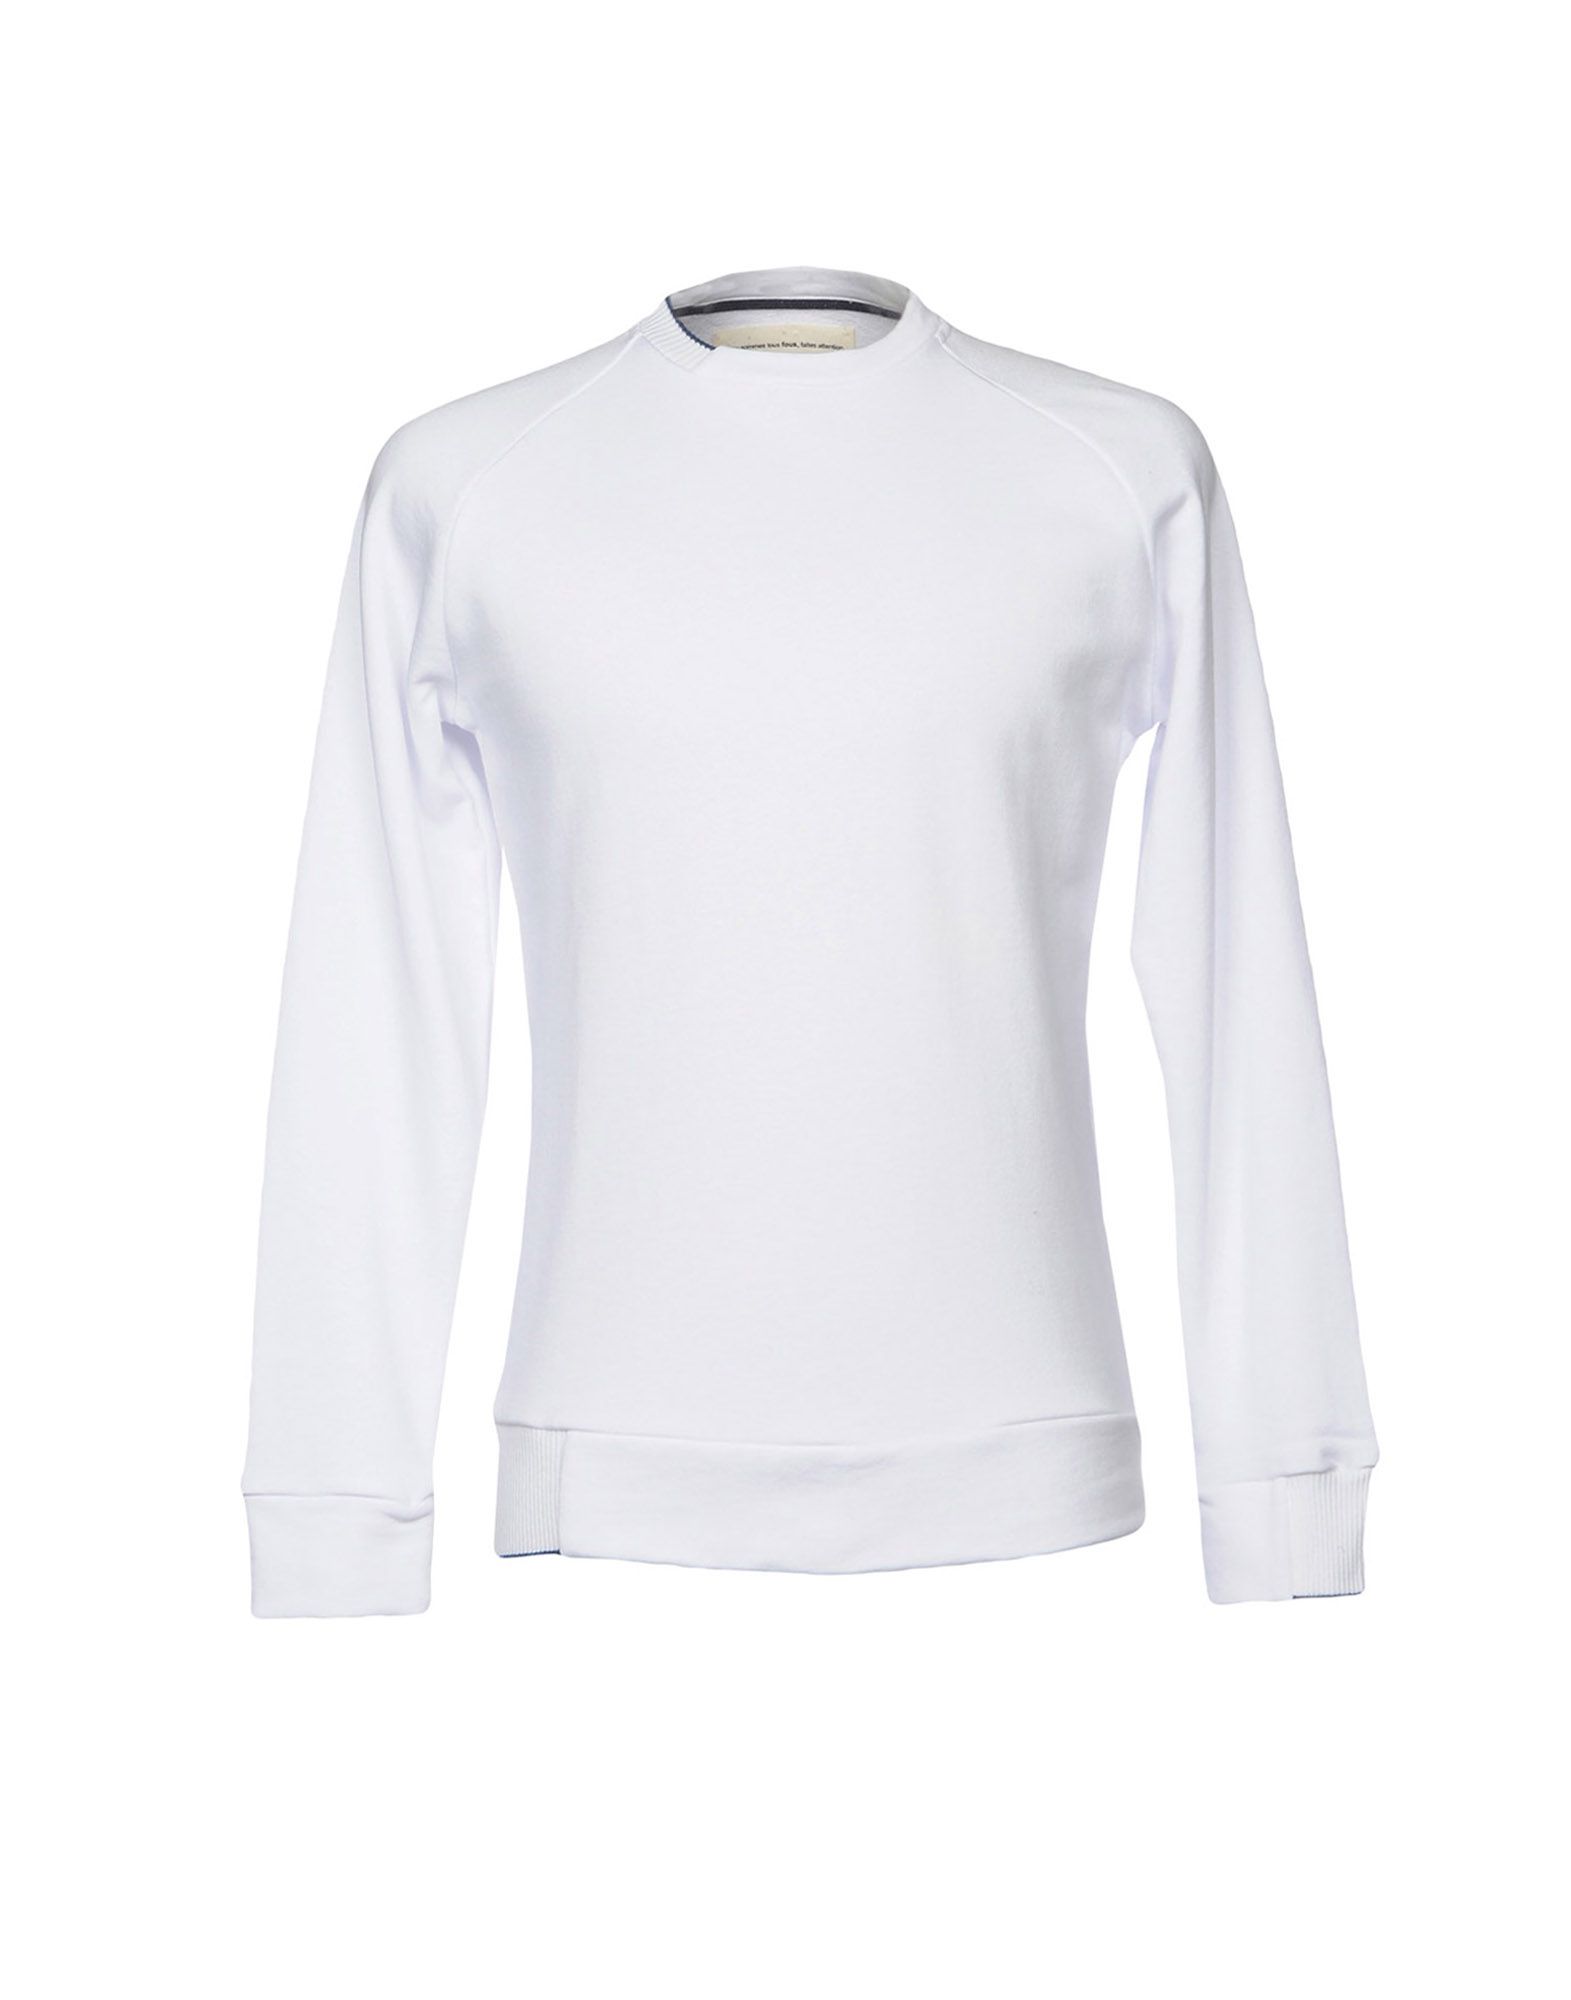 《送料無料》,BEAUCOUP メンズ スウェットシャツ ホワイト XL コットン 100%